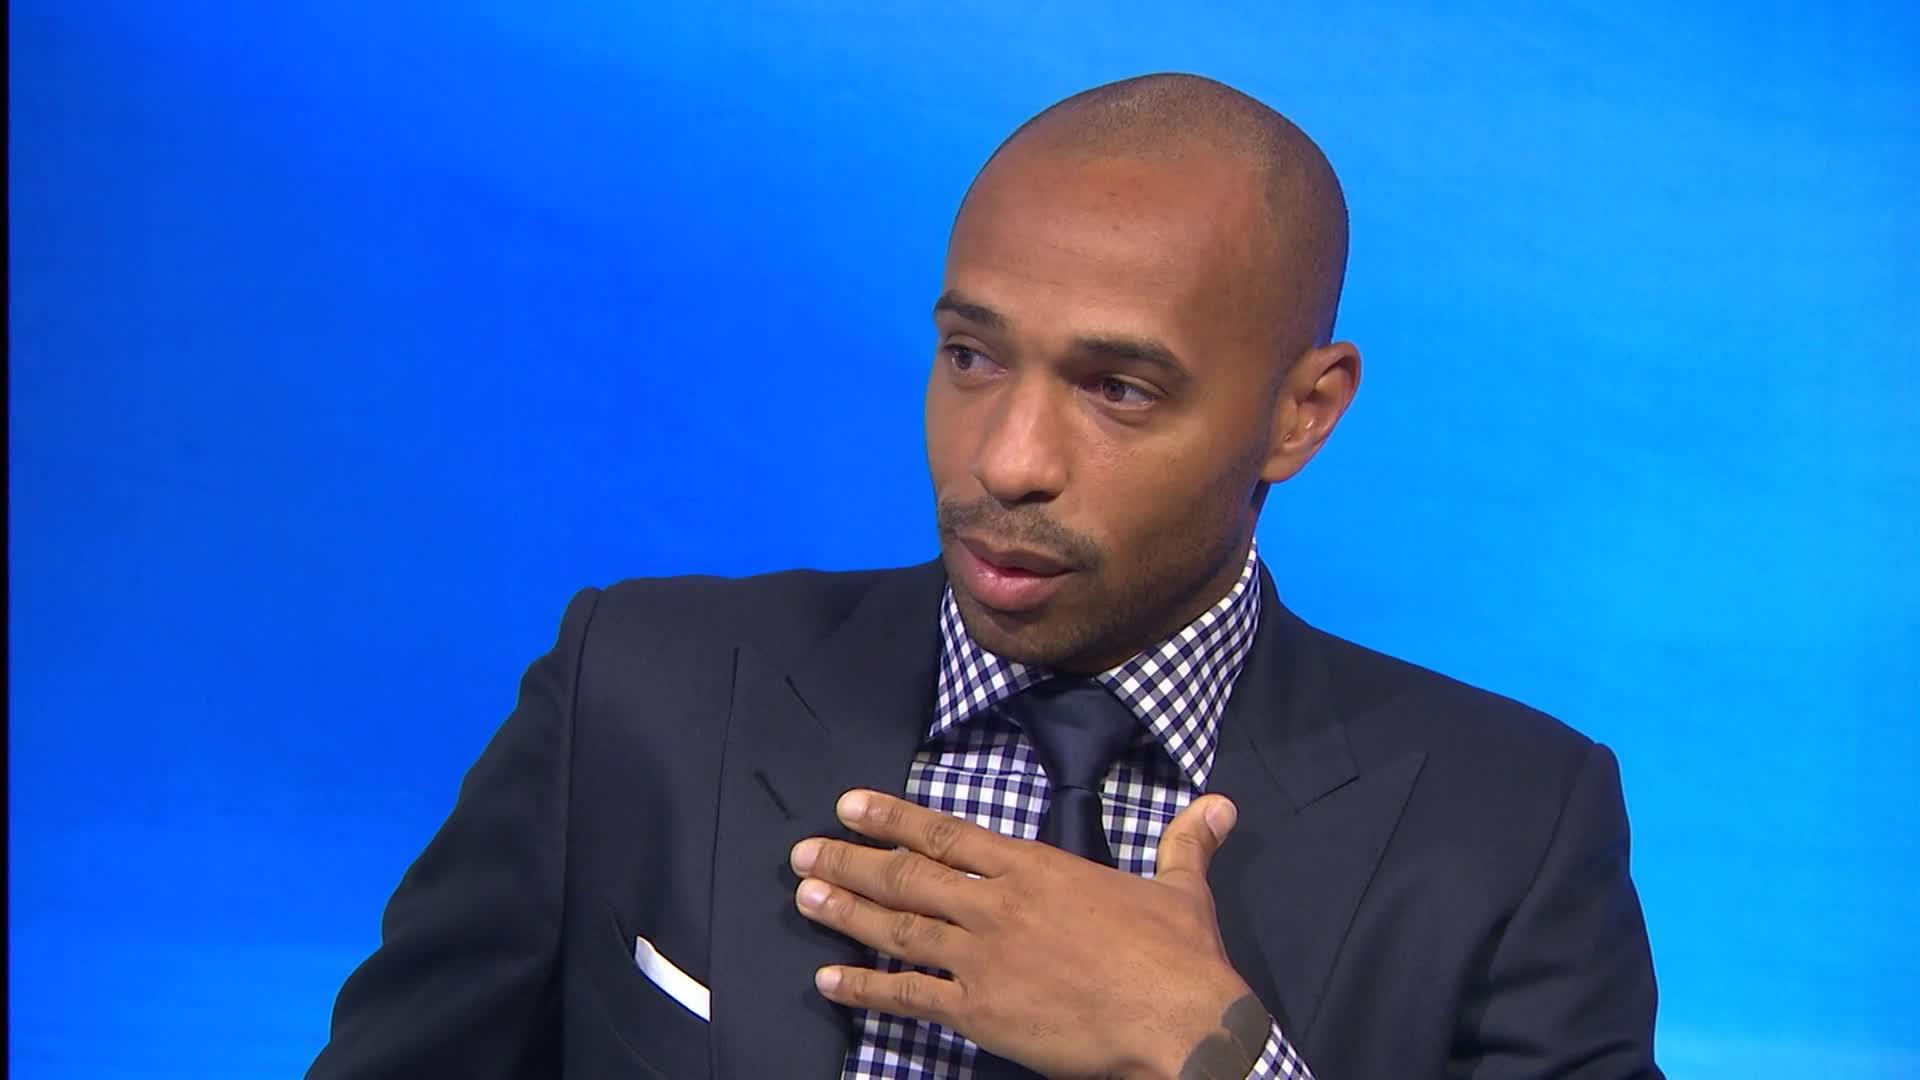 Cầu thủ bóng đá Thierry Henry trong một buổi phỏng vấn